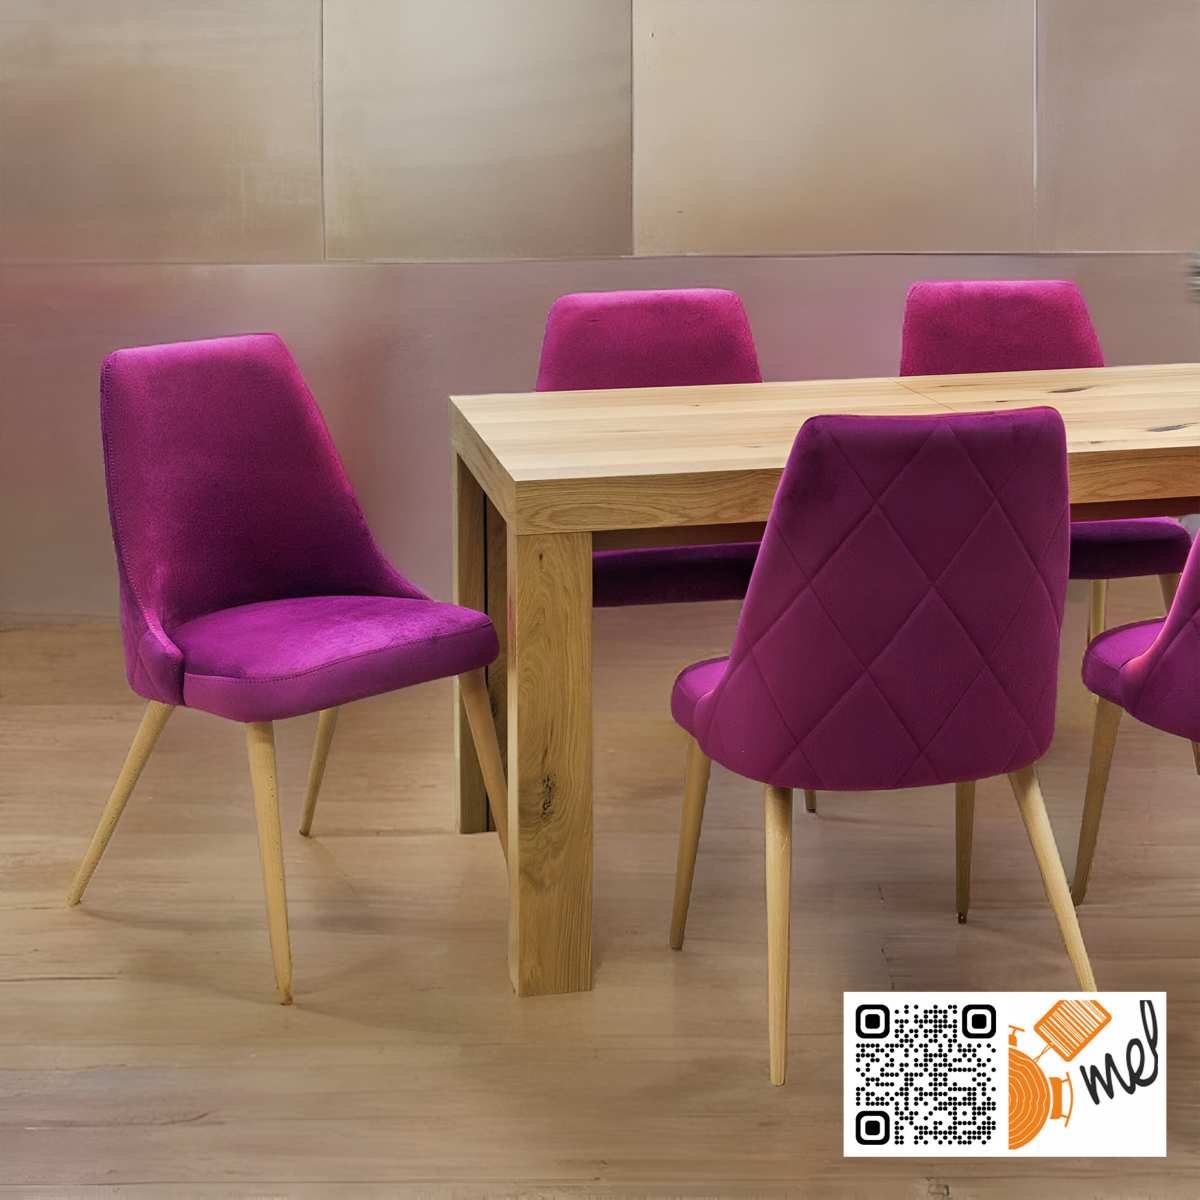 Stół o ośmiu nogach wraz z krzesłami welurowymi w kolorze różowym